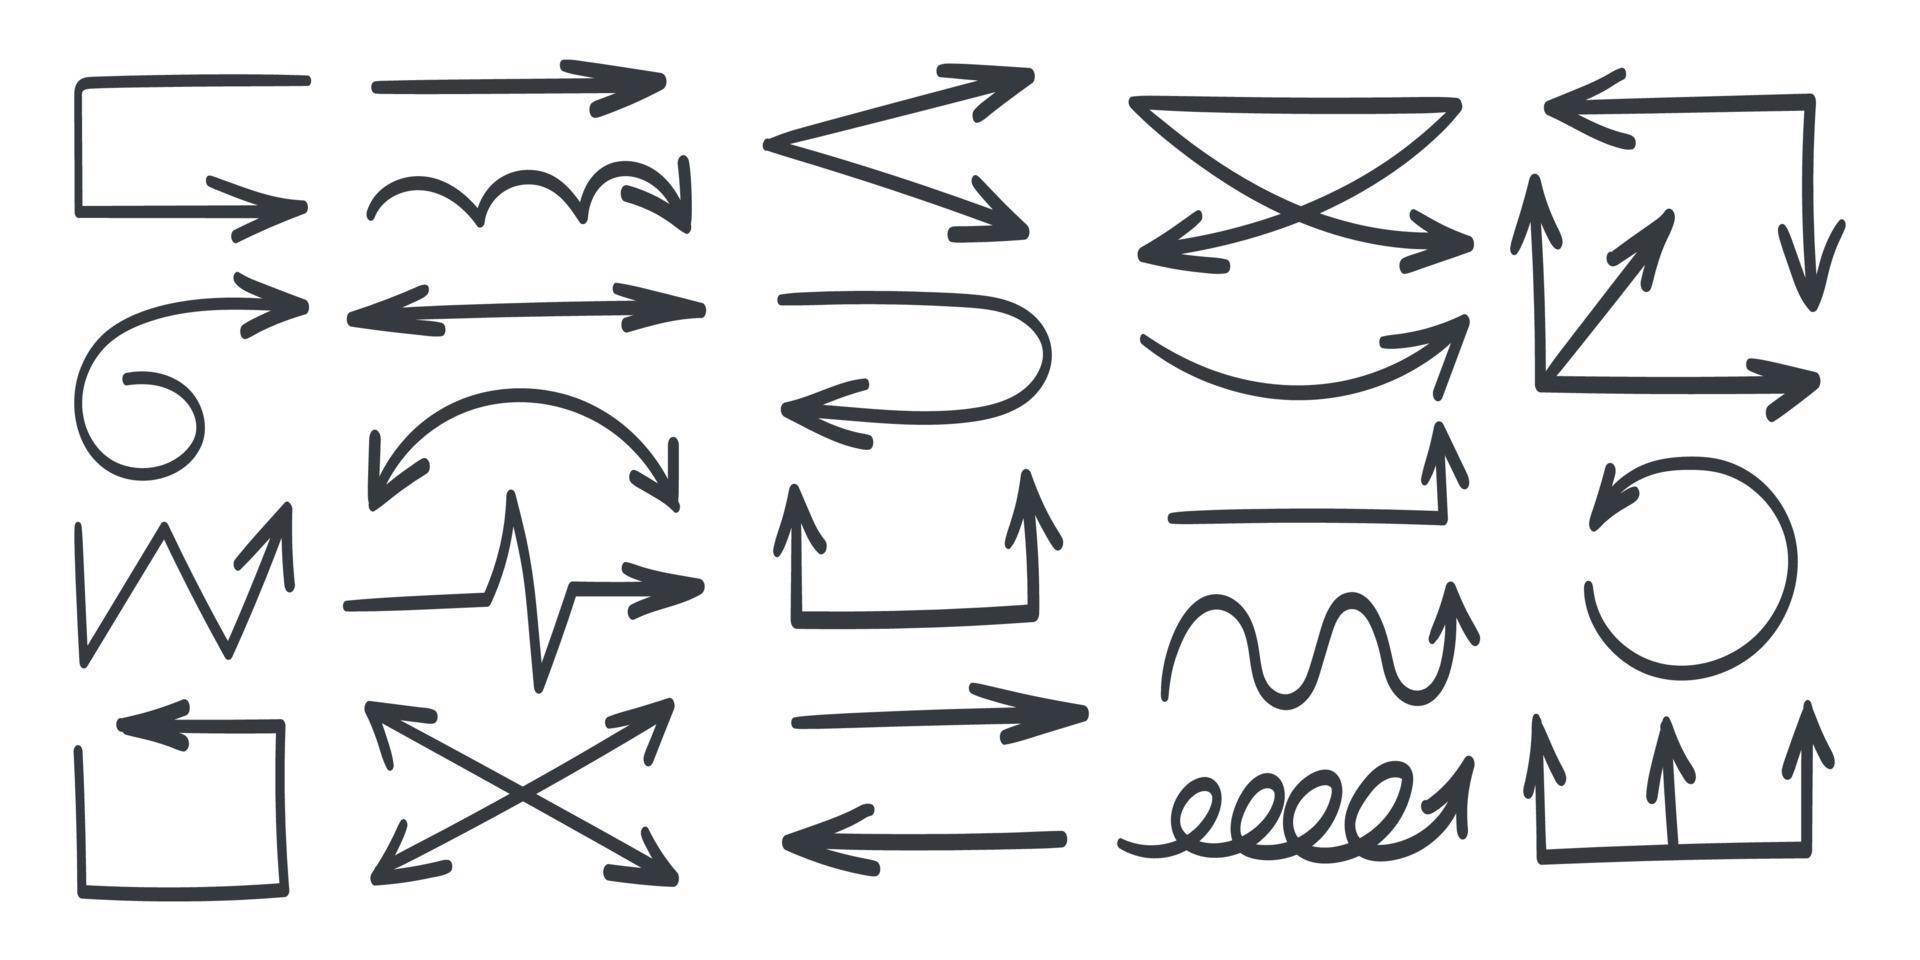 iconos de flechas. flechas dibujadas a mano negra. signos de flechas vectoriales dibujadas vector